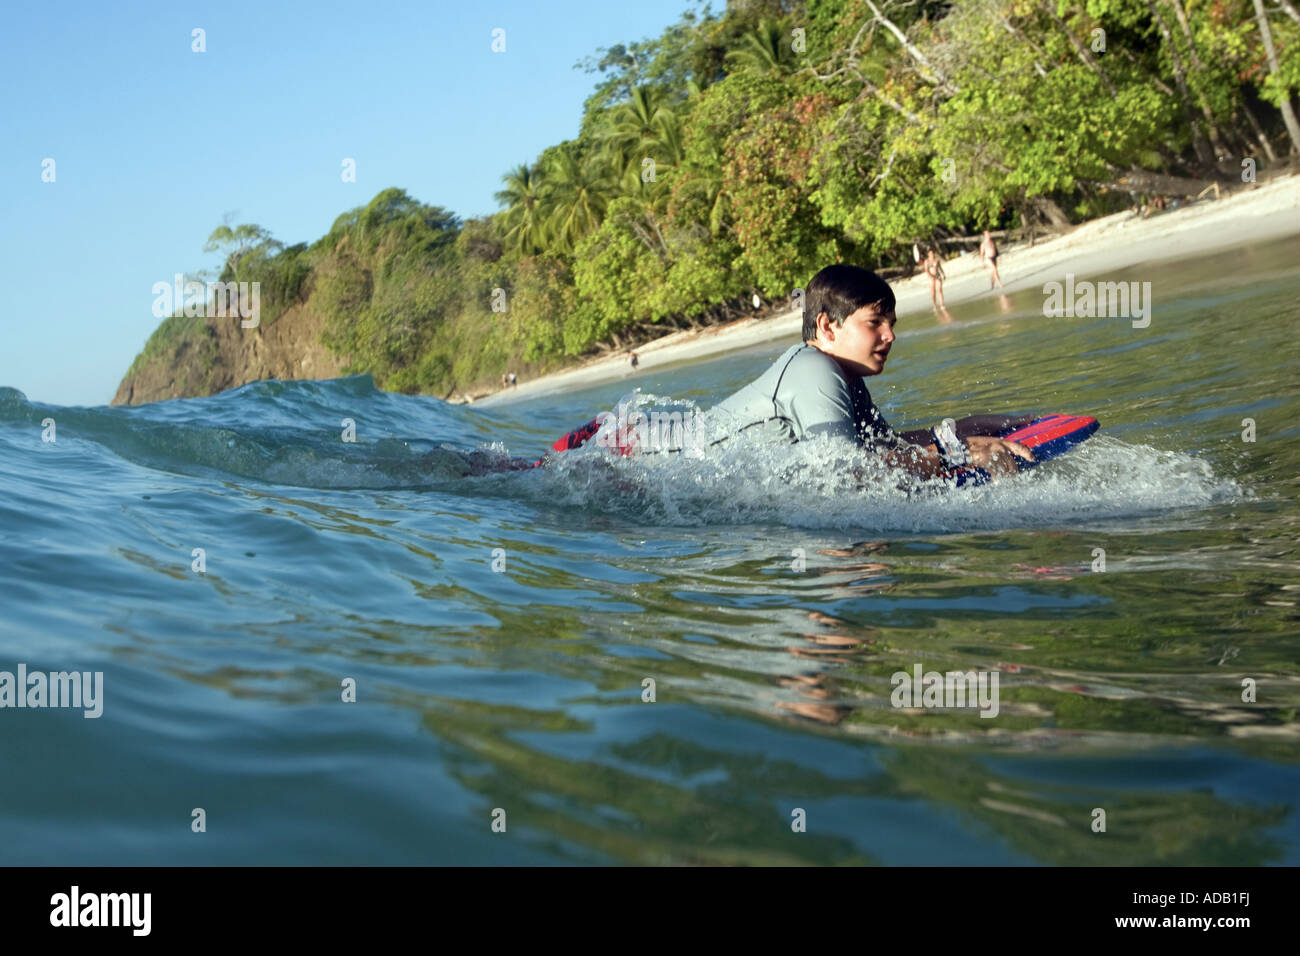 Boy riding a wave sur une planche de surf à la plage Banque D'Images